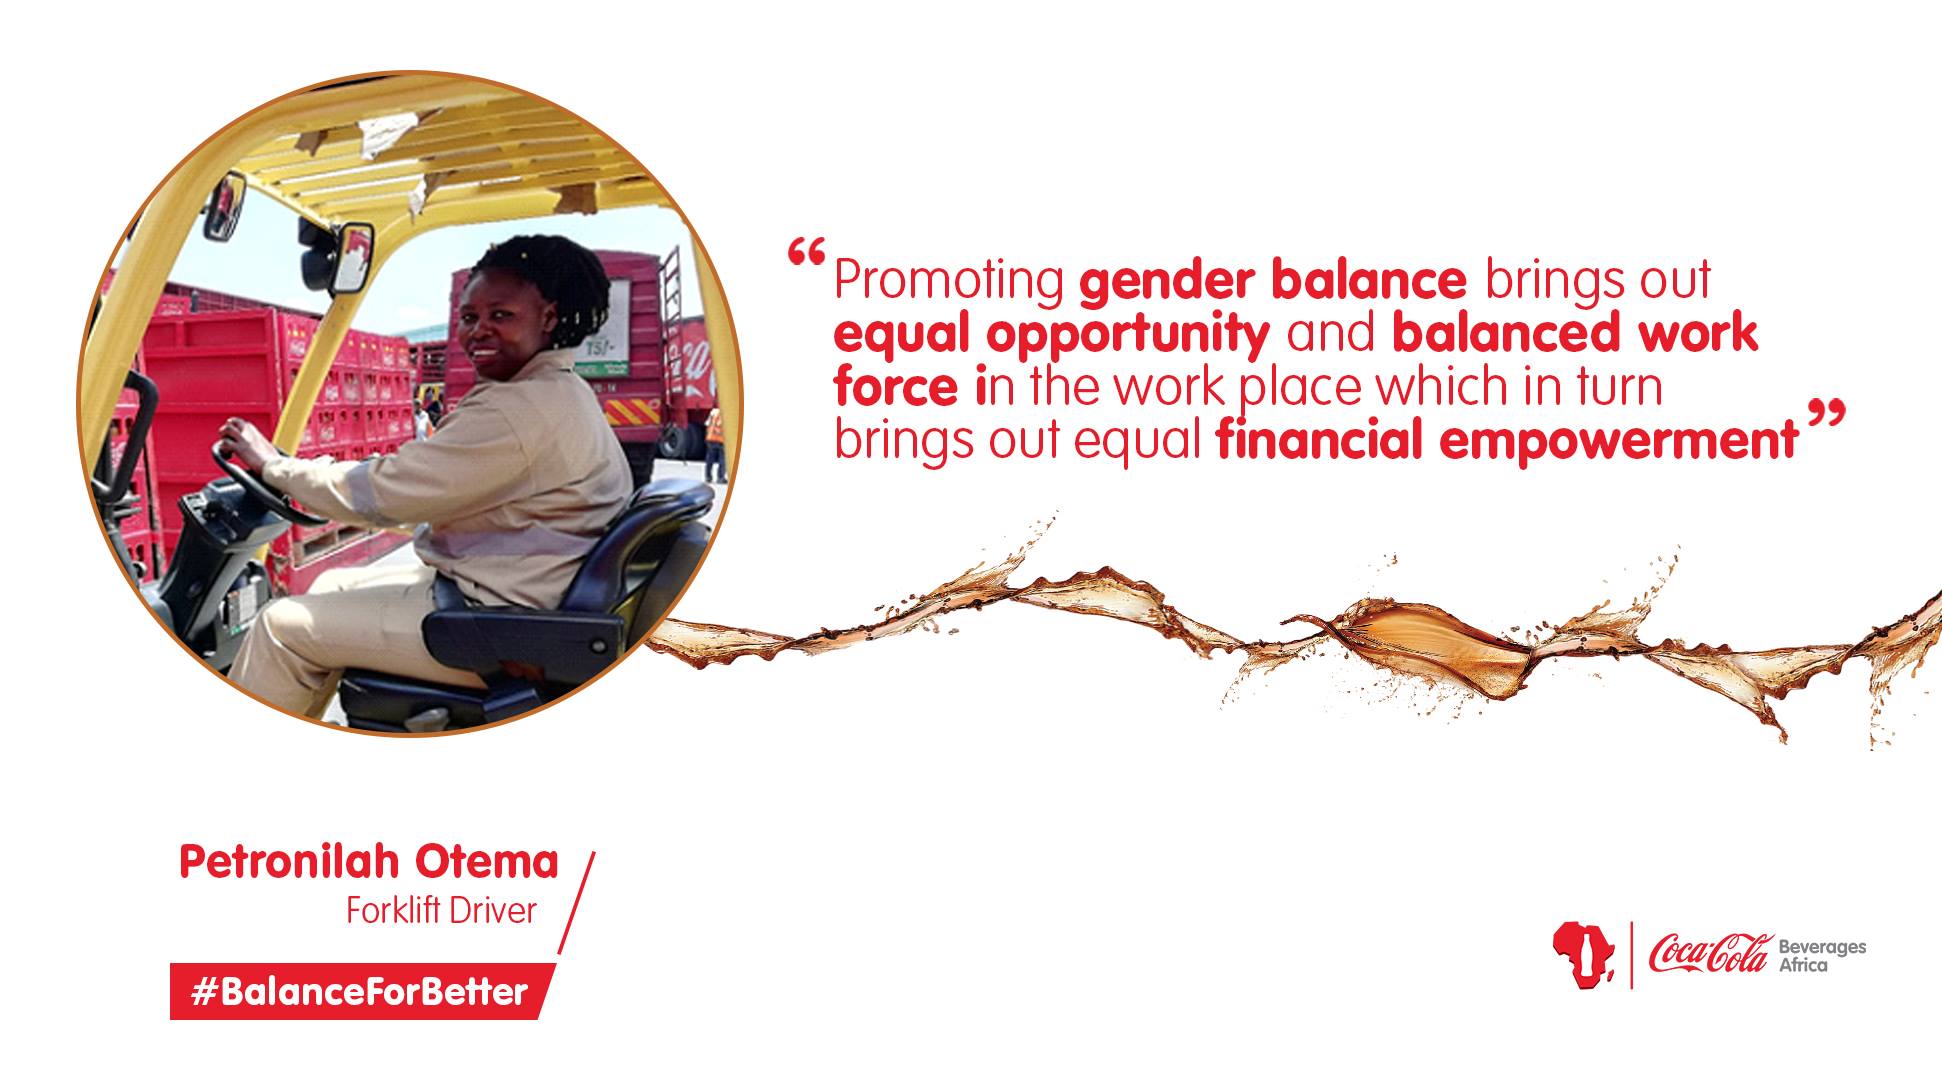 À¦ À¦à¦ À¦° Coca Cola Beverages Africa In Kenya As A Forklift Driver Petronila Intends To Influence More Women Within The Workplace And Society To Challenge The Status Quo And Bring Out Their Abilities Into